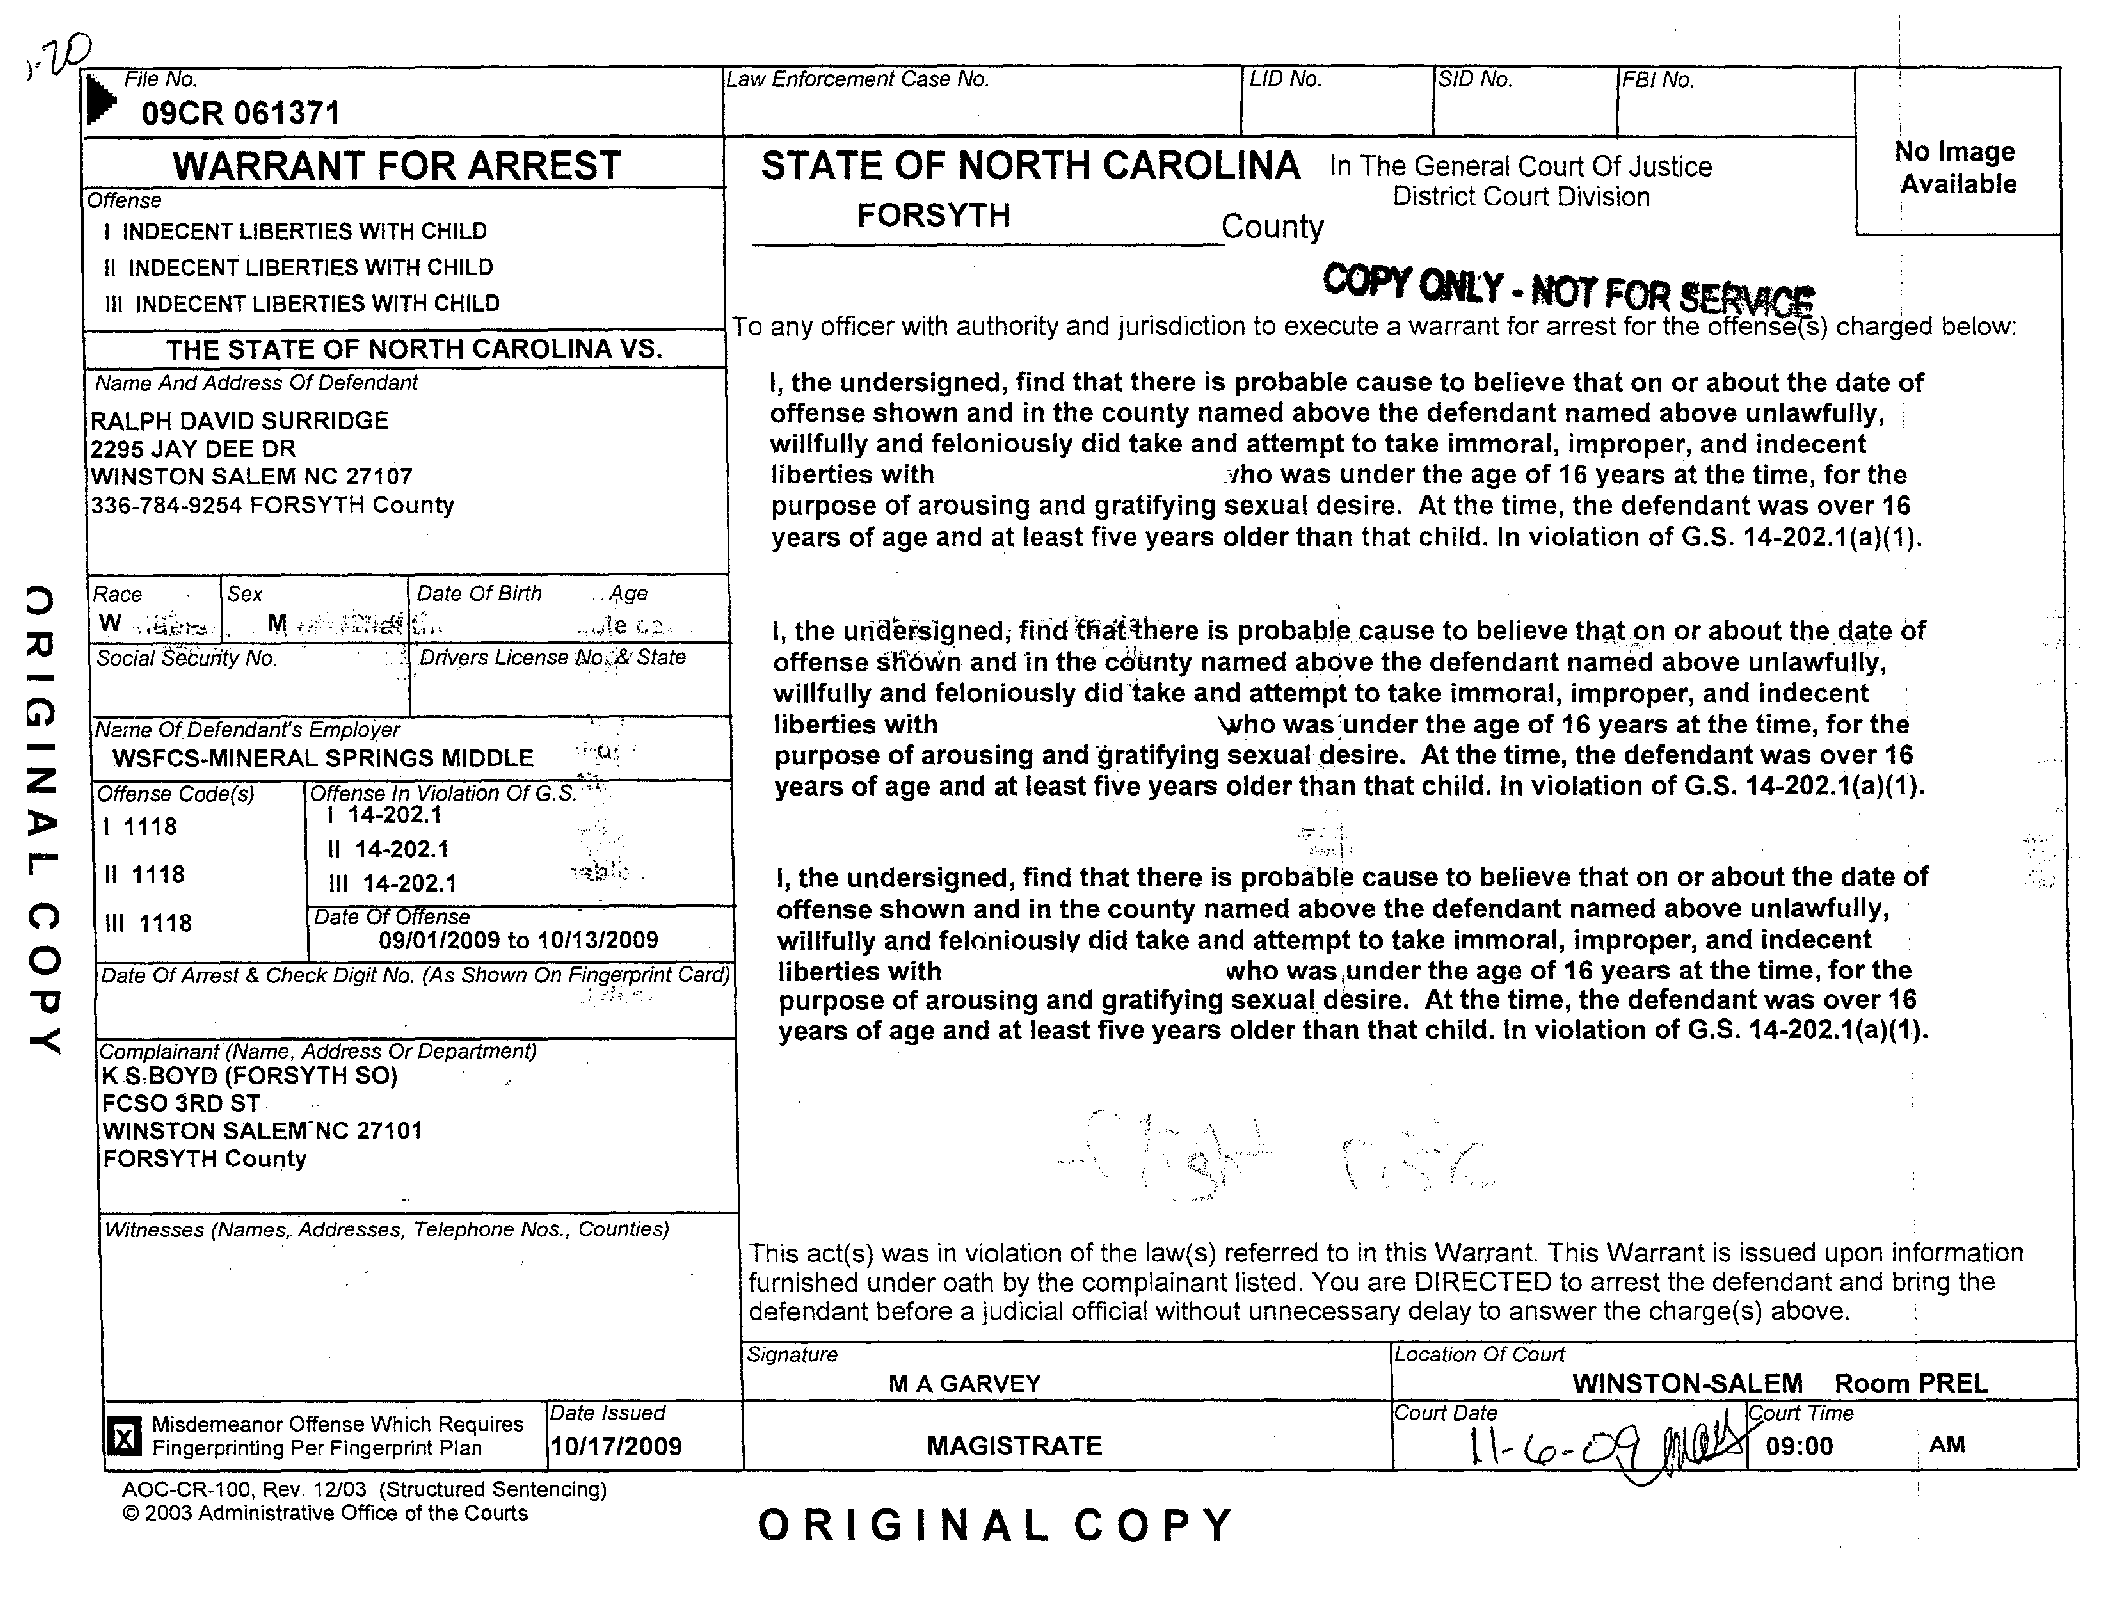 Copy of surridge ralph david arrest warrant2.png